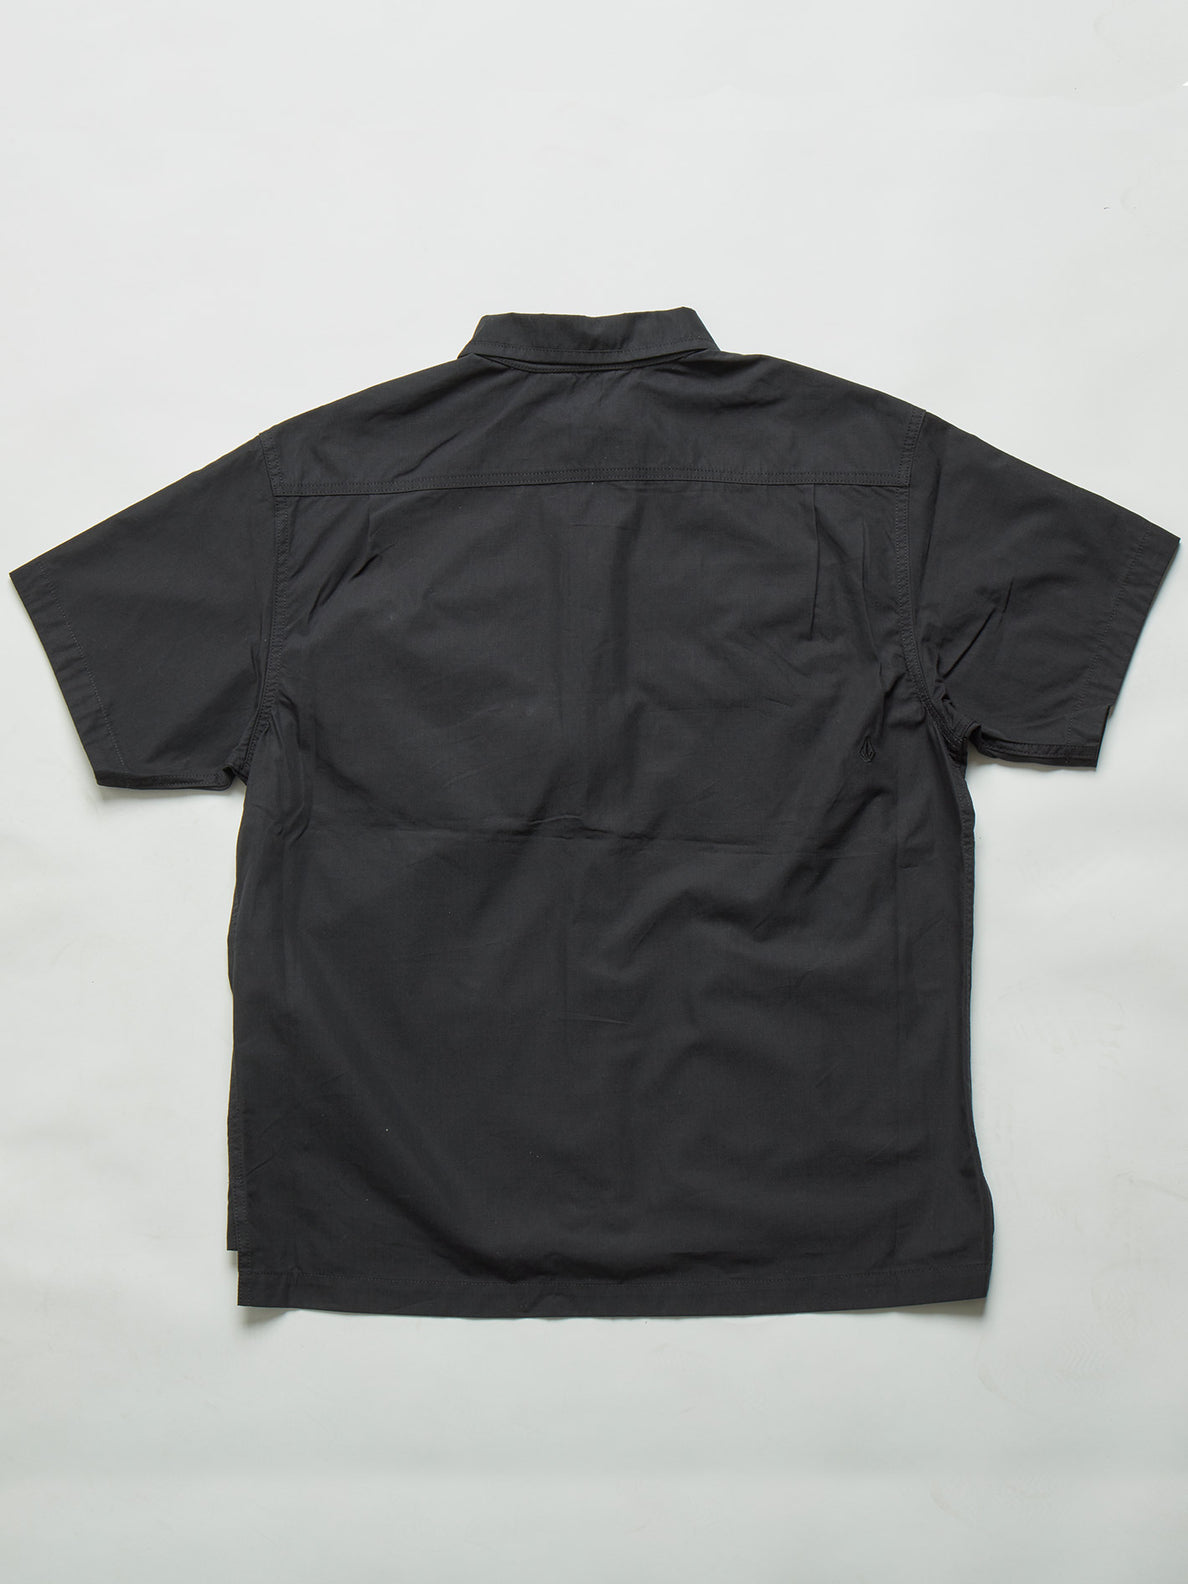 Jp V Mil Shirt Black (A0402100_BLK) [4]